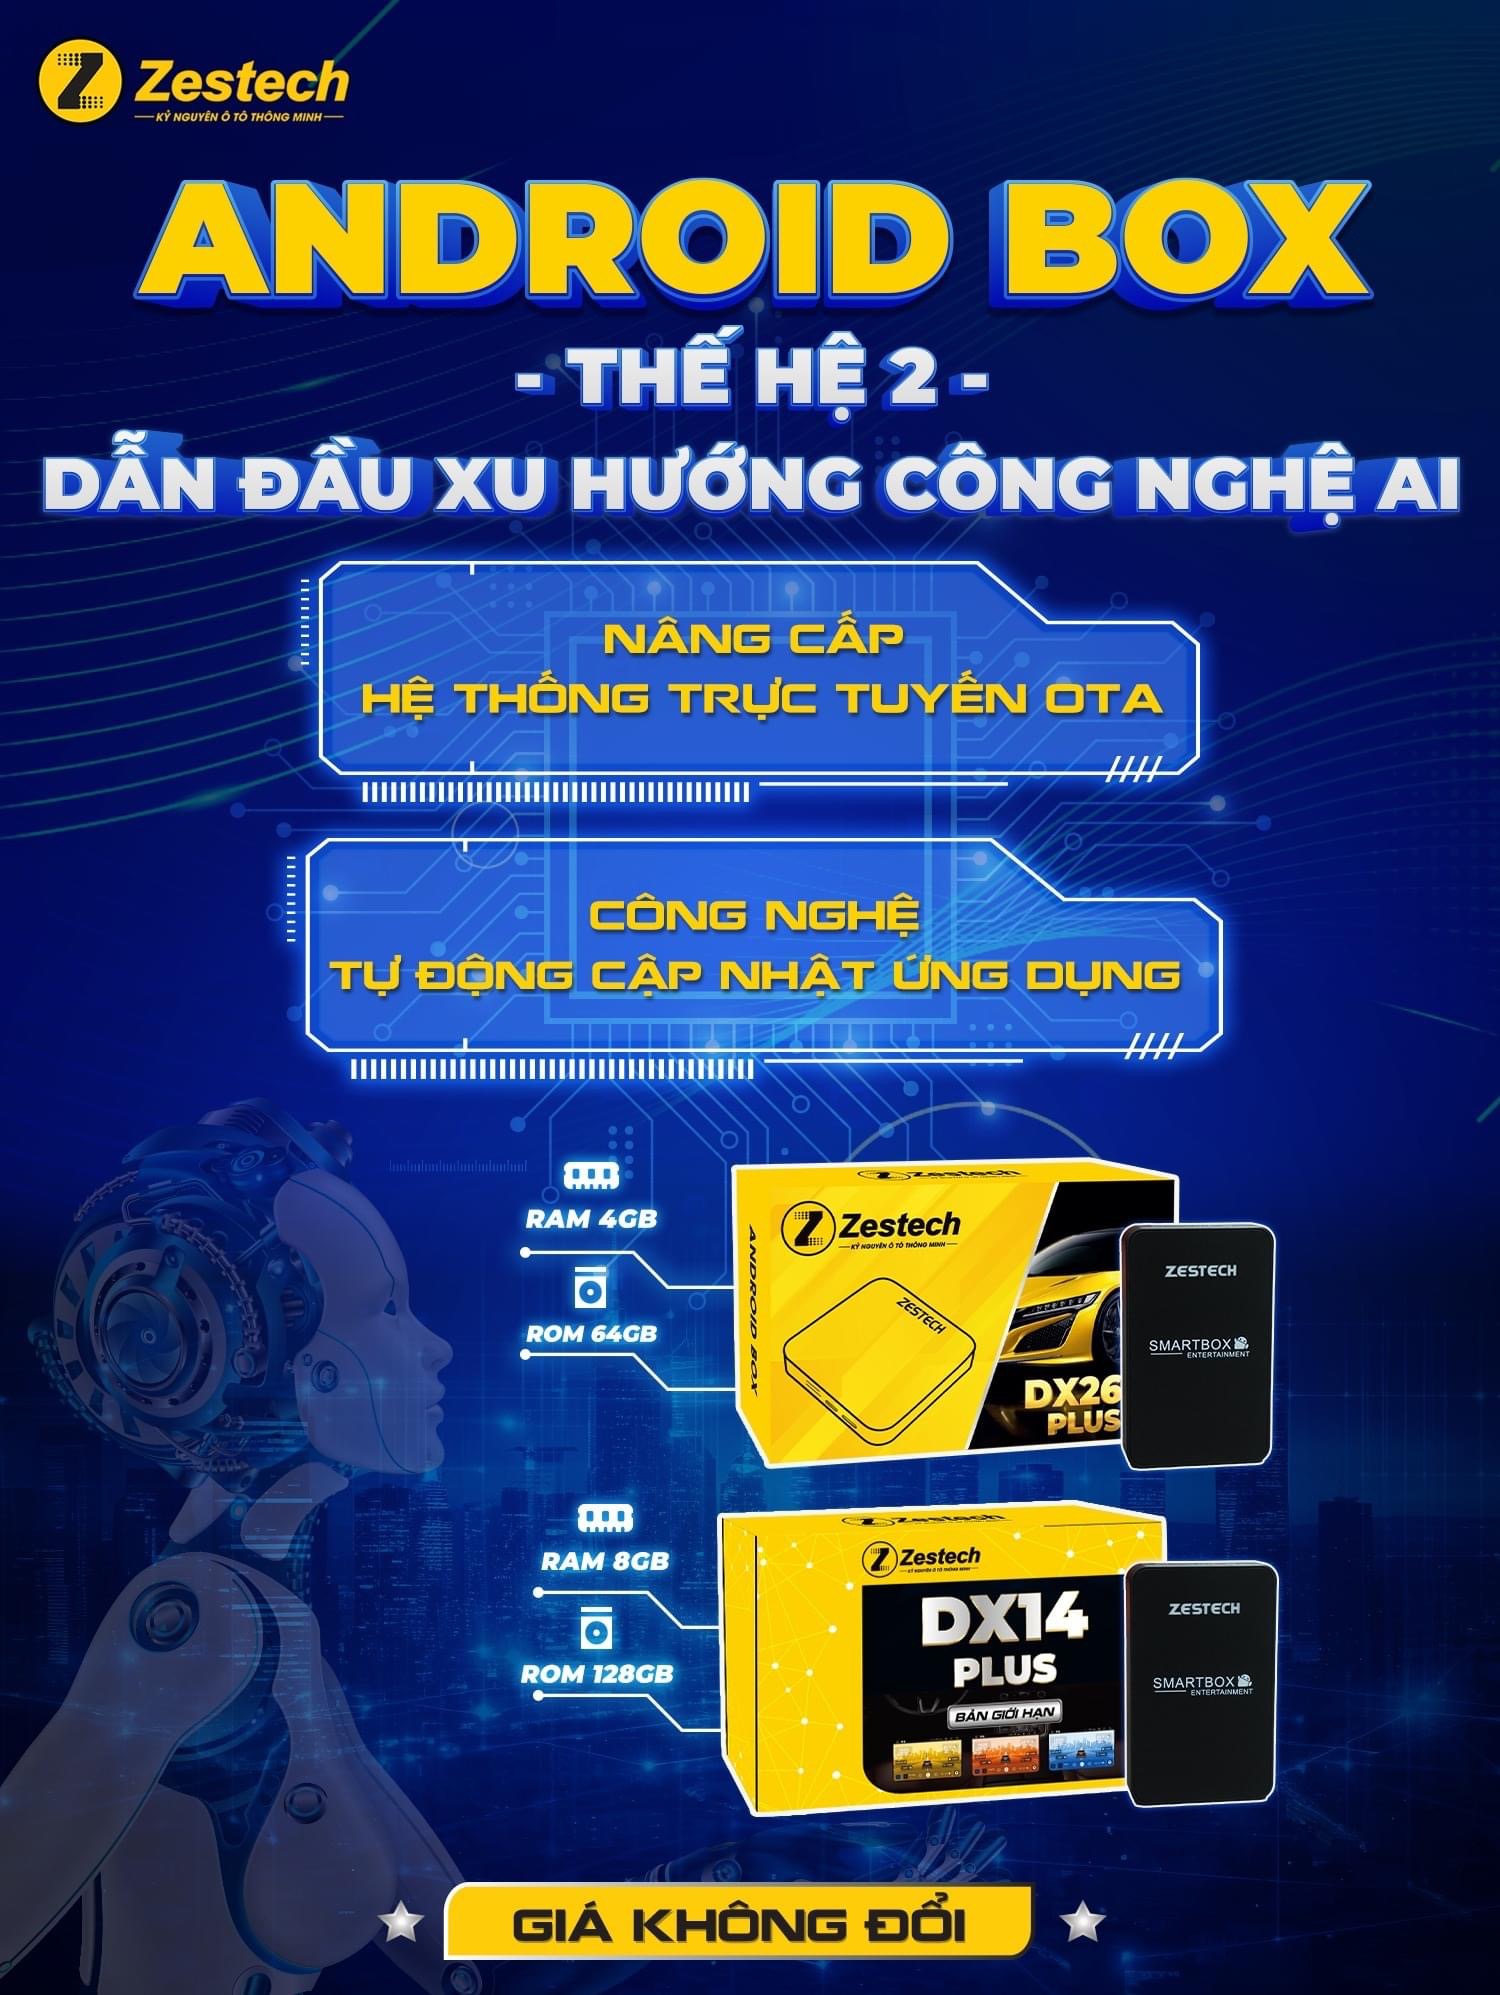 ANDROID BOX ZESTECH DX 265 PLUS